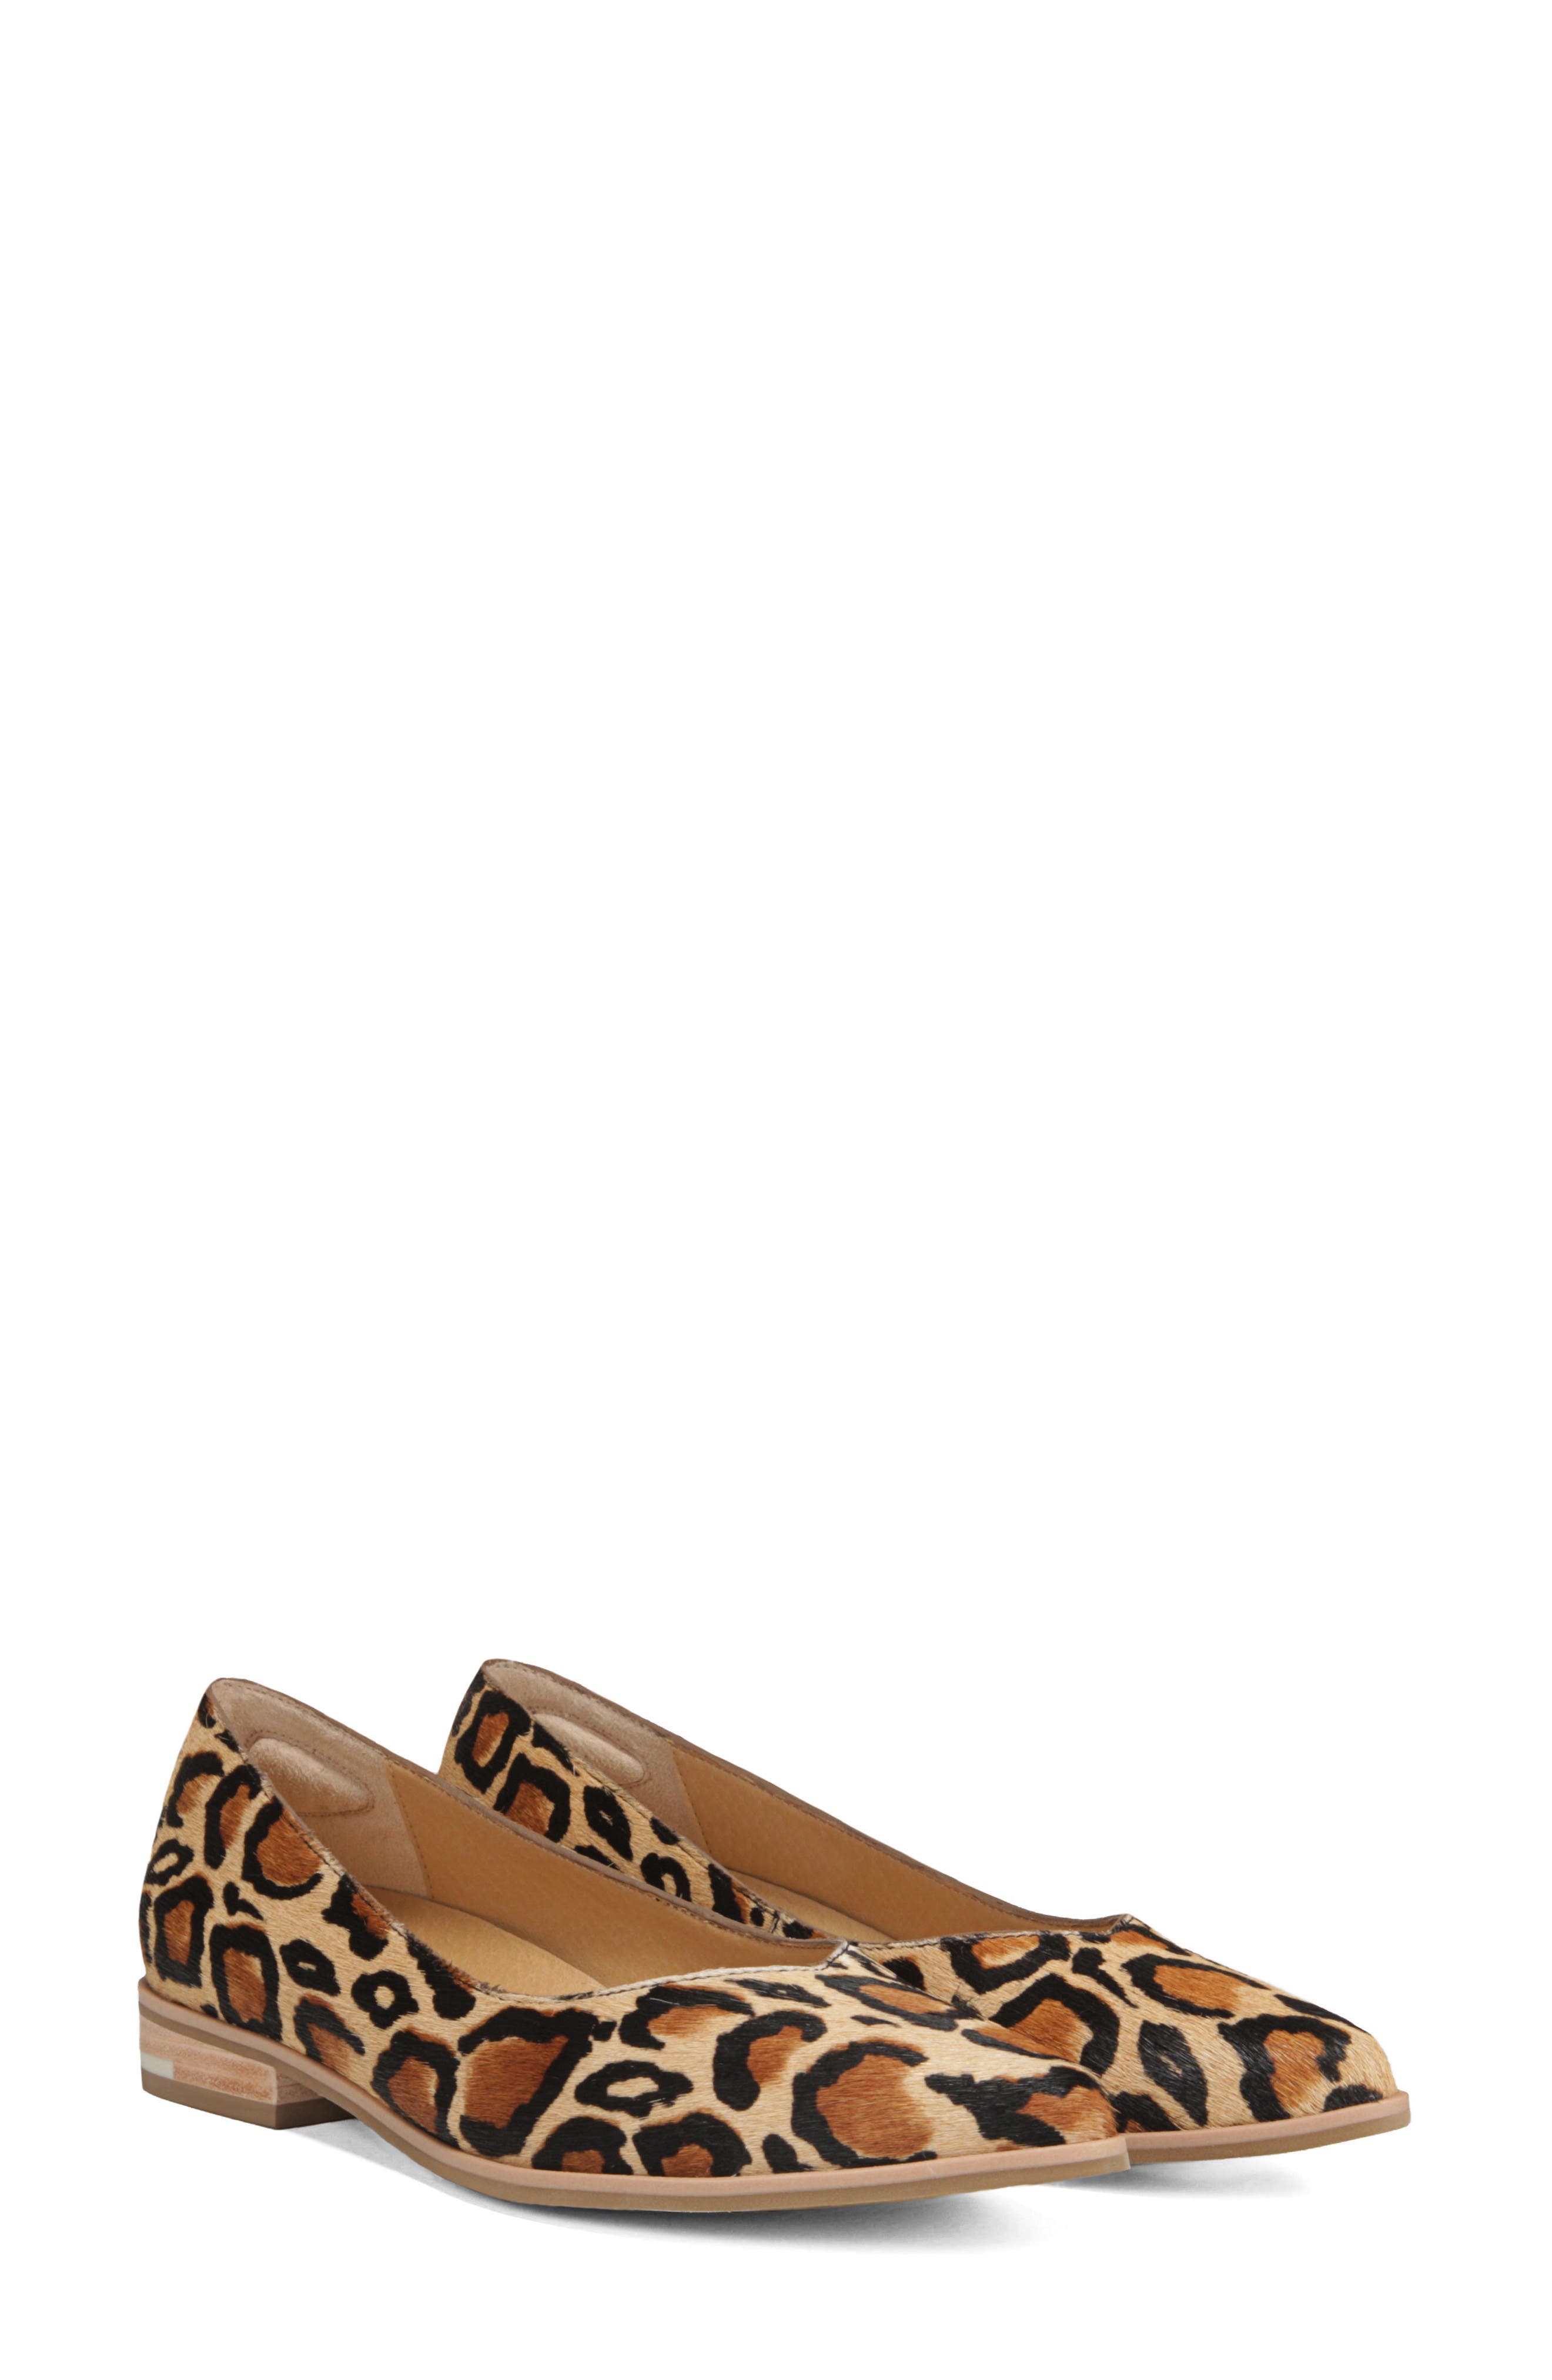 leopard print calf hair flats